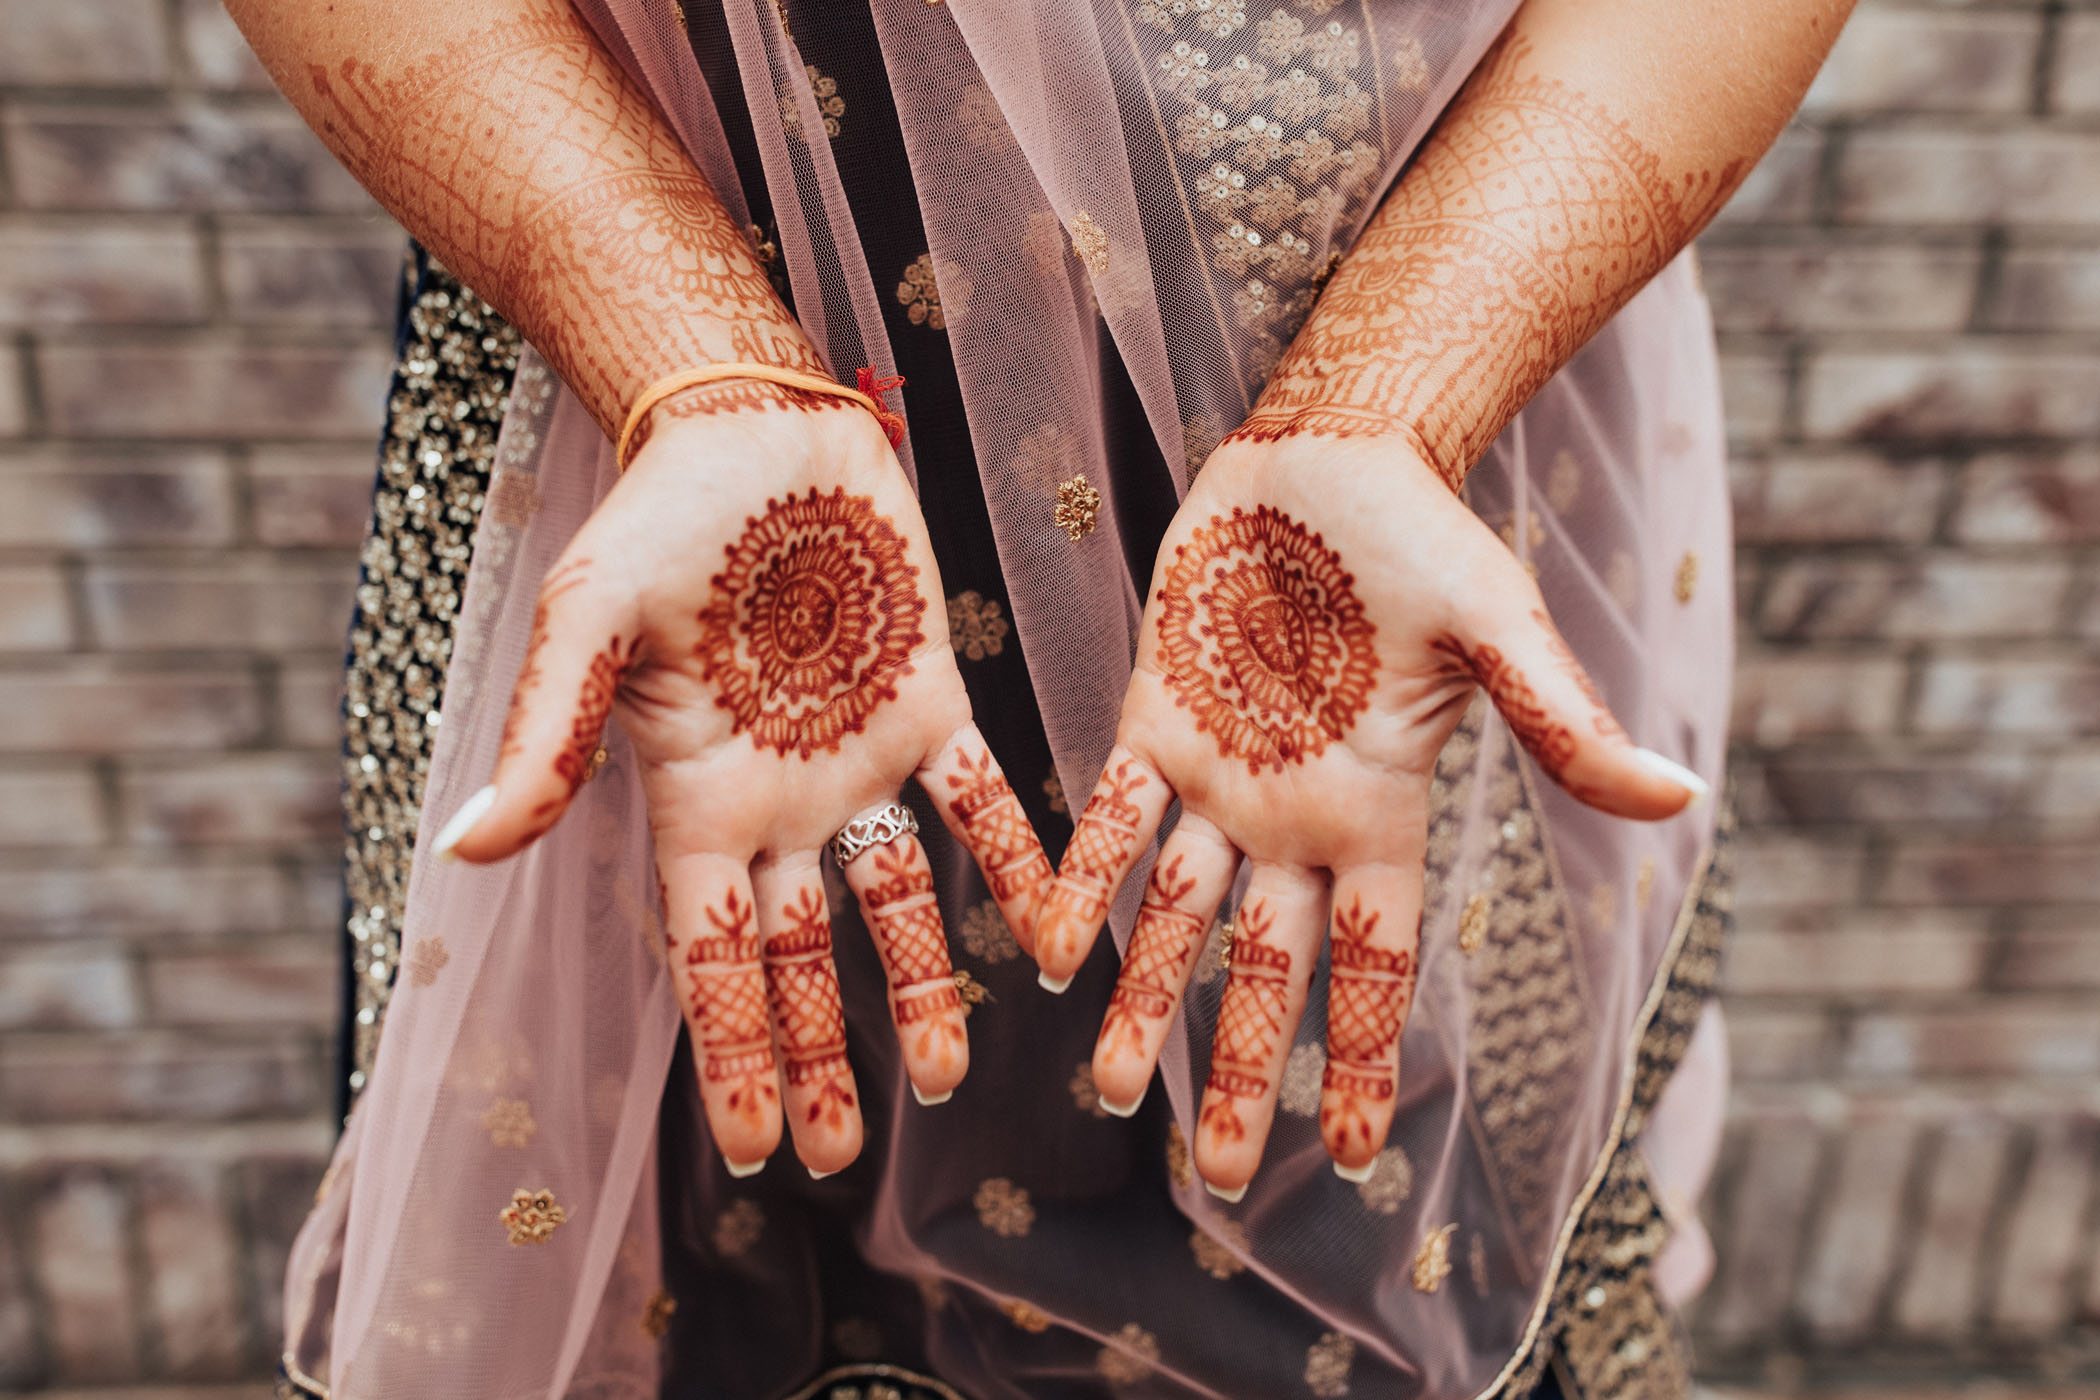 Indian-Western Hybrid Wedding Henna